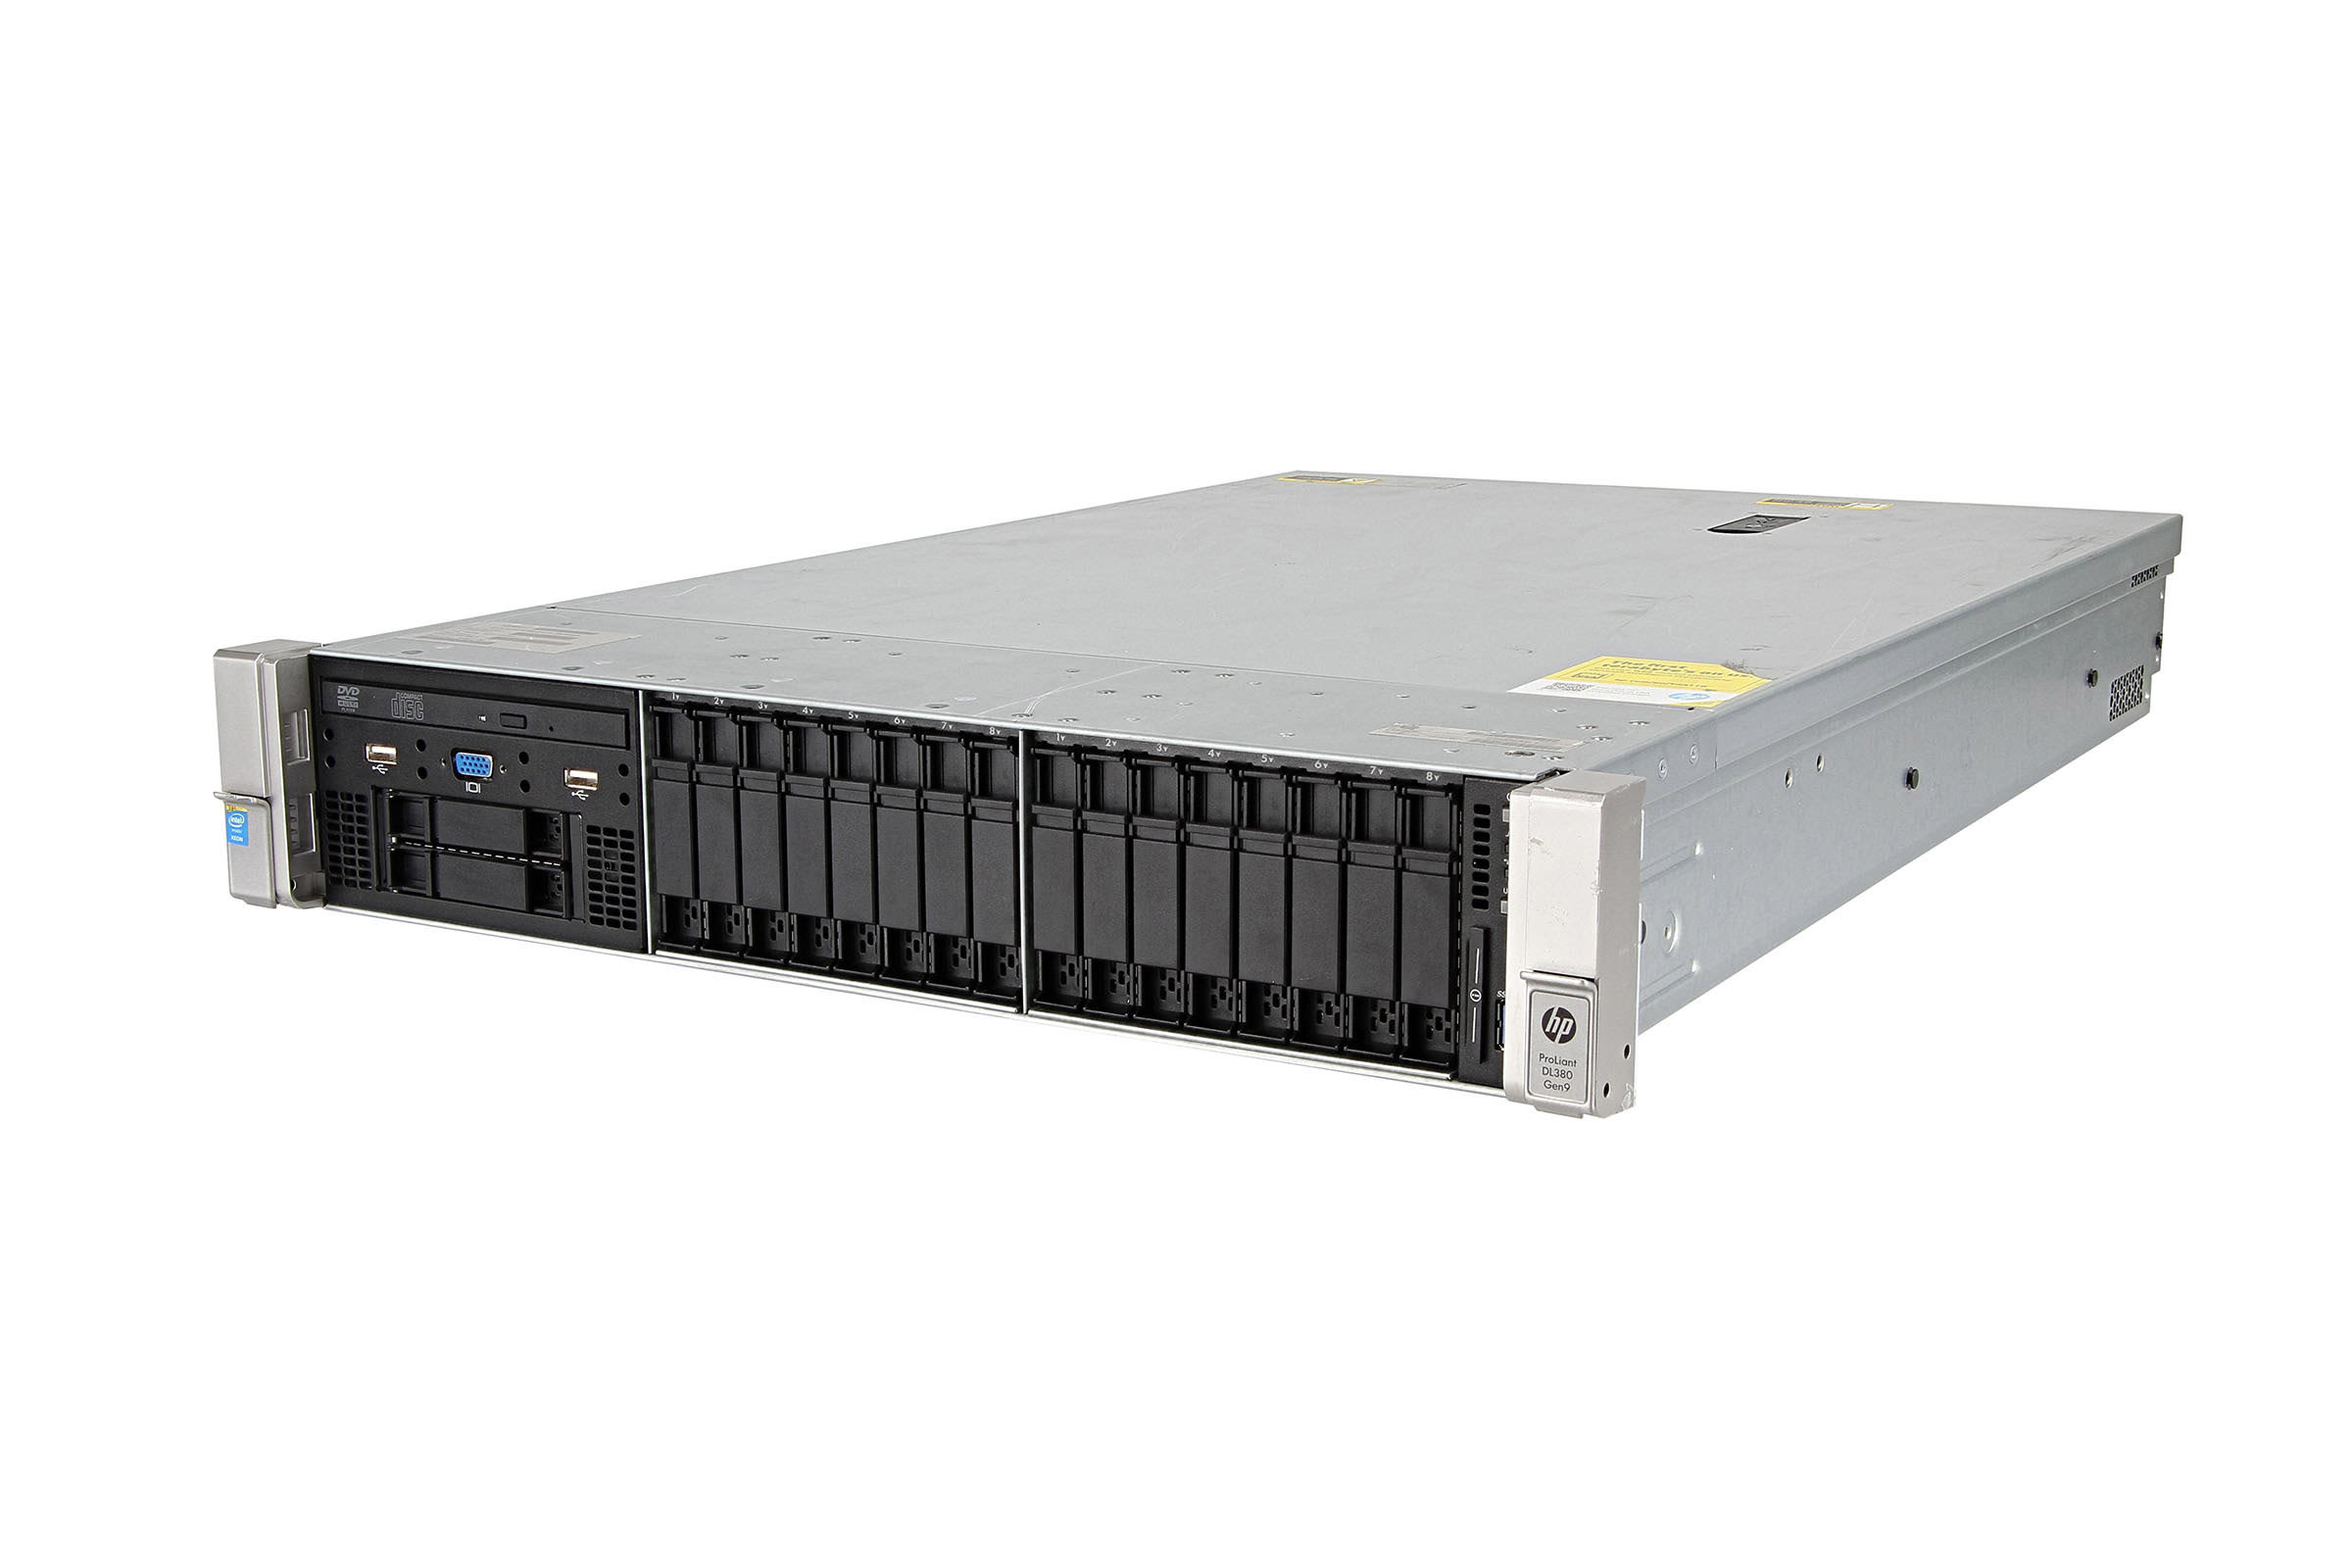 HPE DL380 Gen9 Server